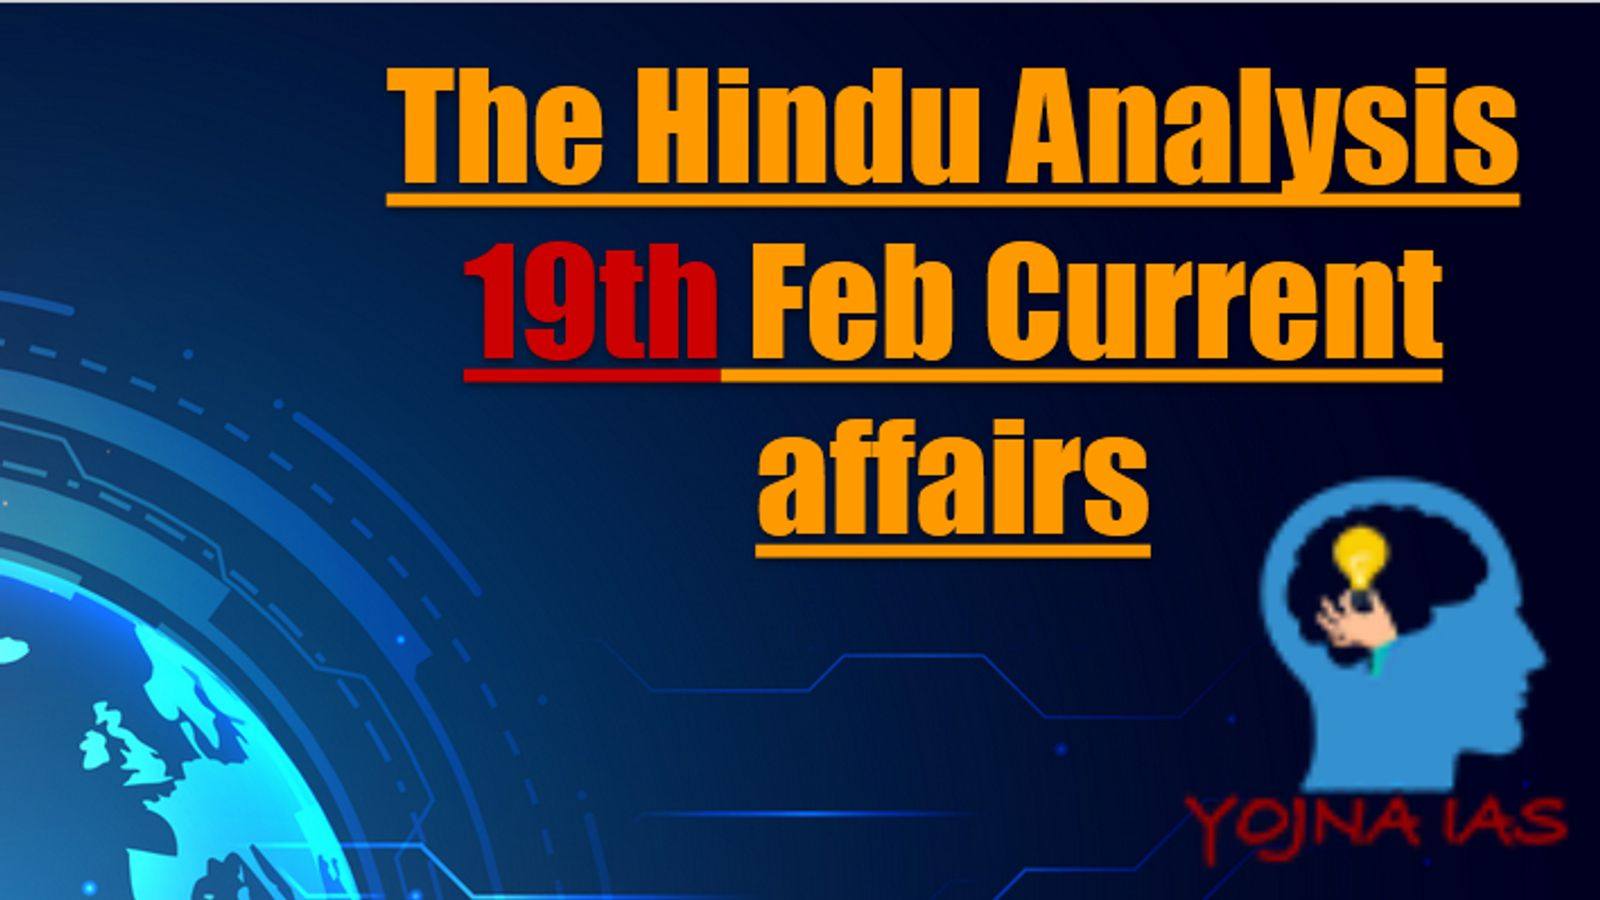 The Hindu Analysis 19 February